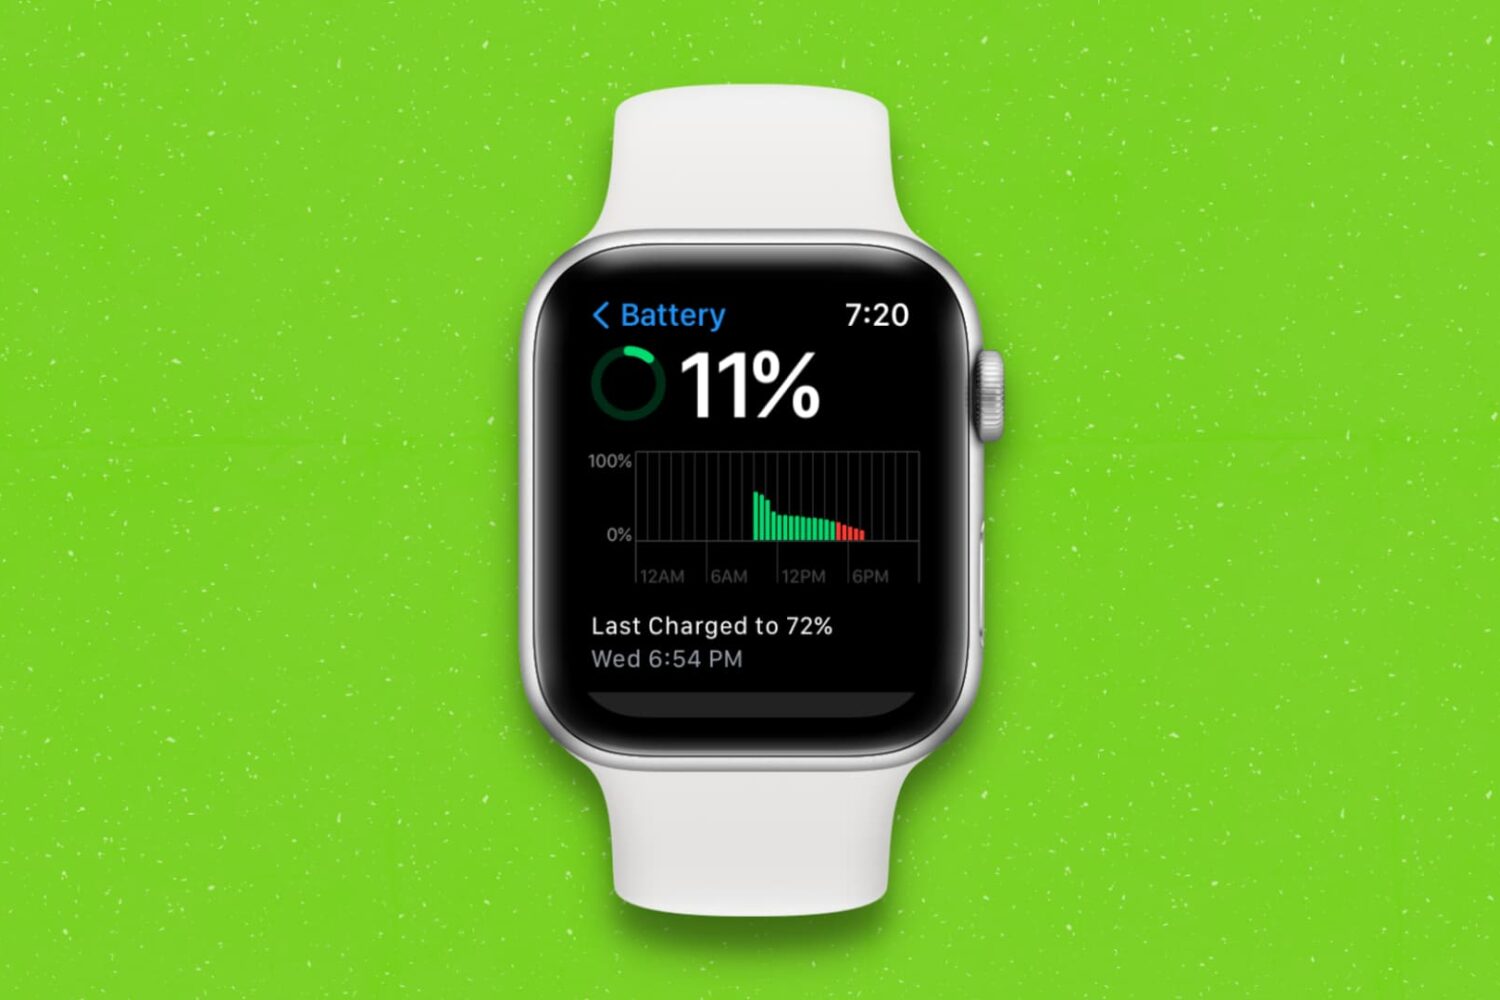 Battery settings on Apple Watch